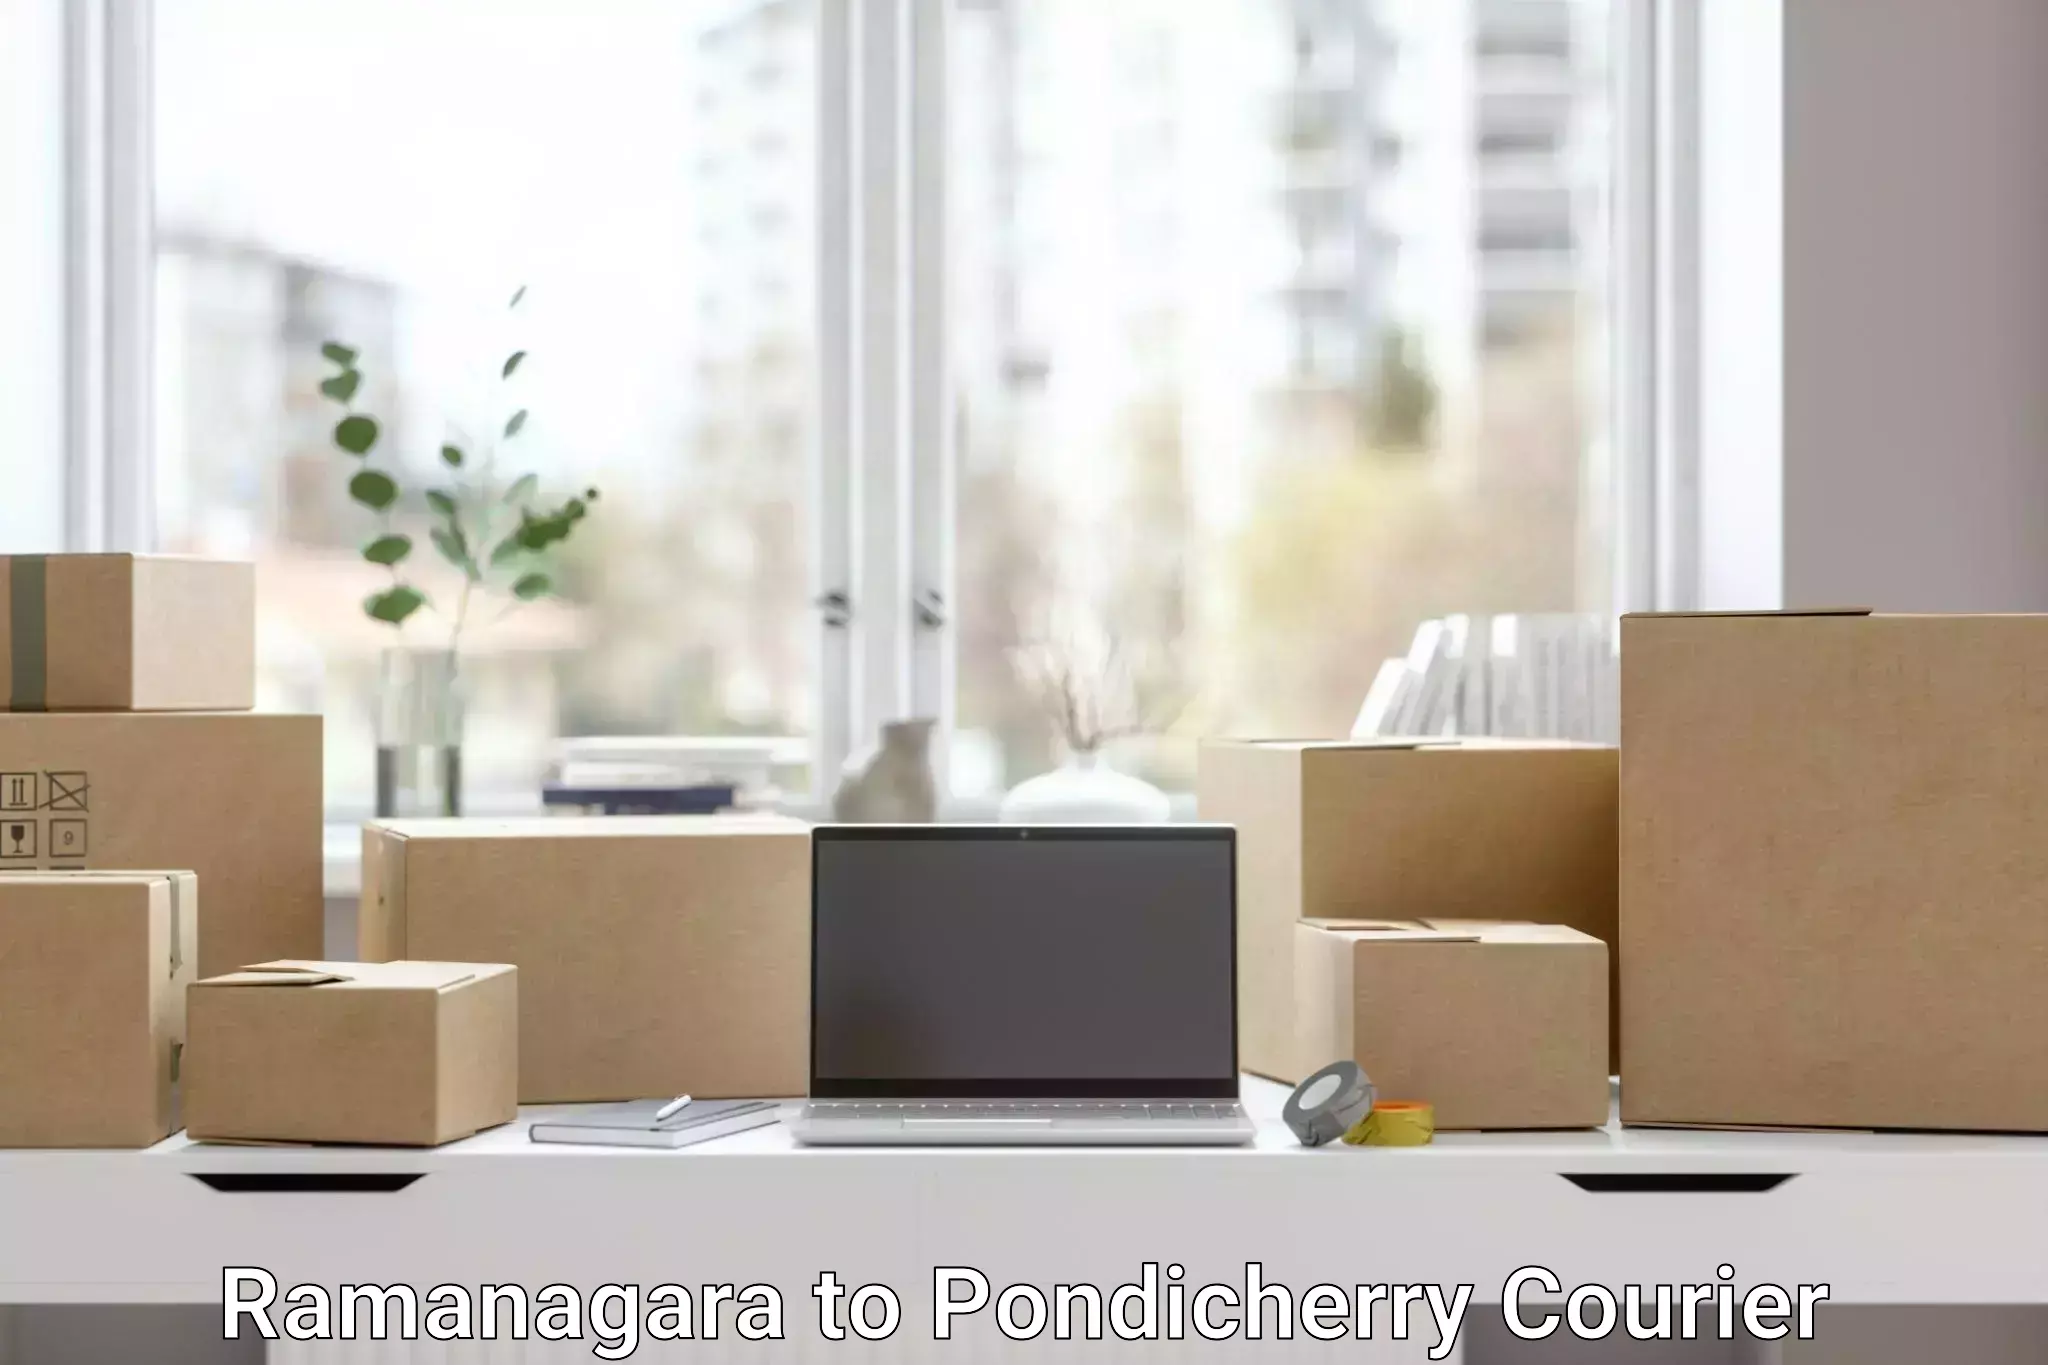 Modern courier technology Ramanagara to Pondicherry